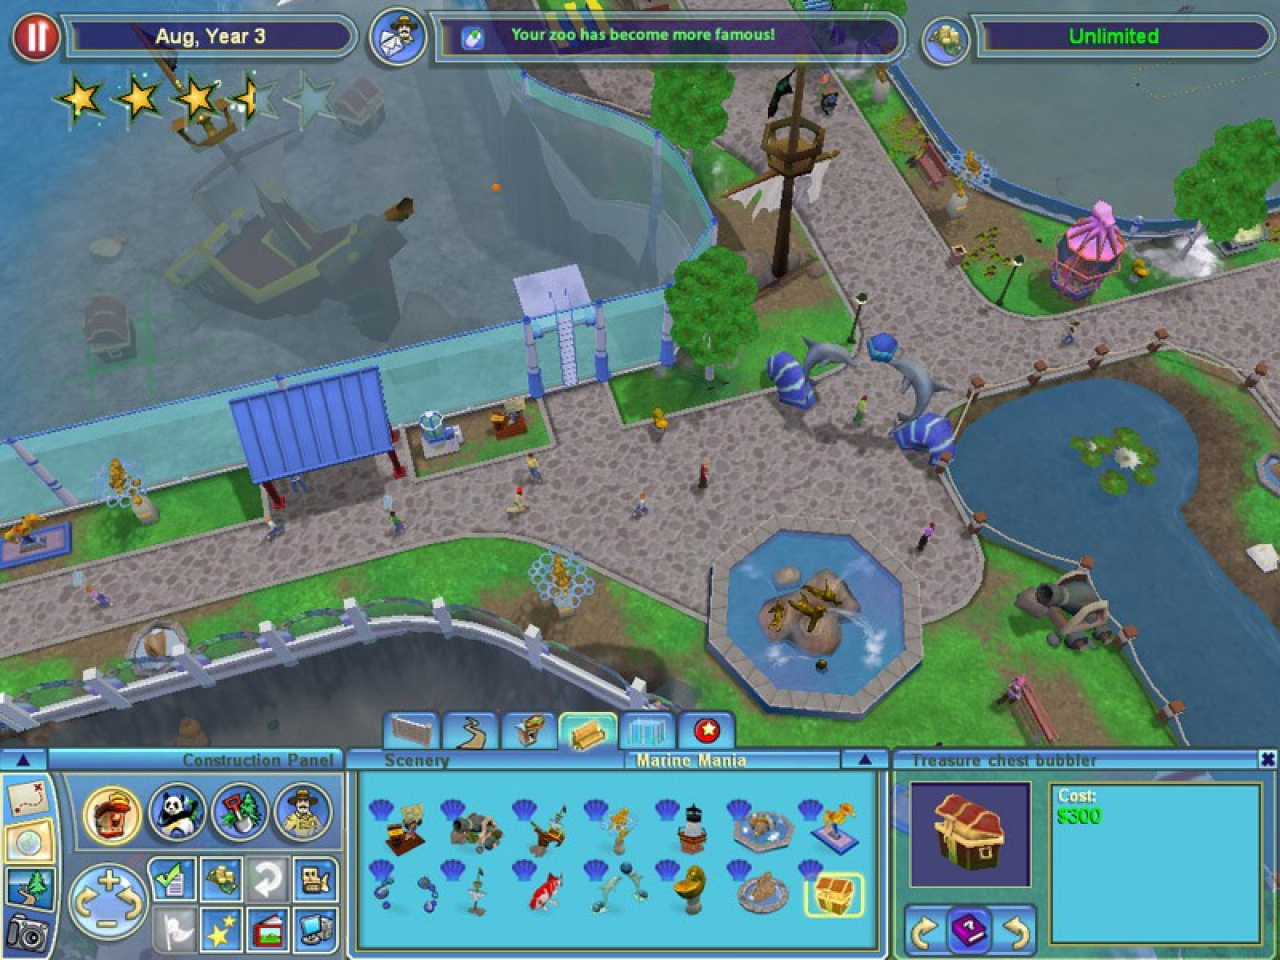  Zoo Tycoon 2 - Mac : Video Games